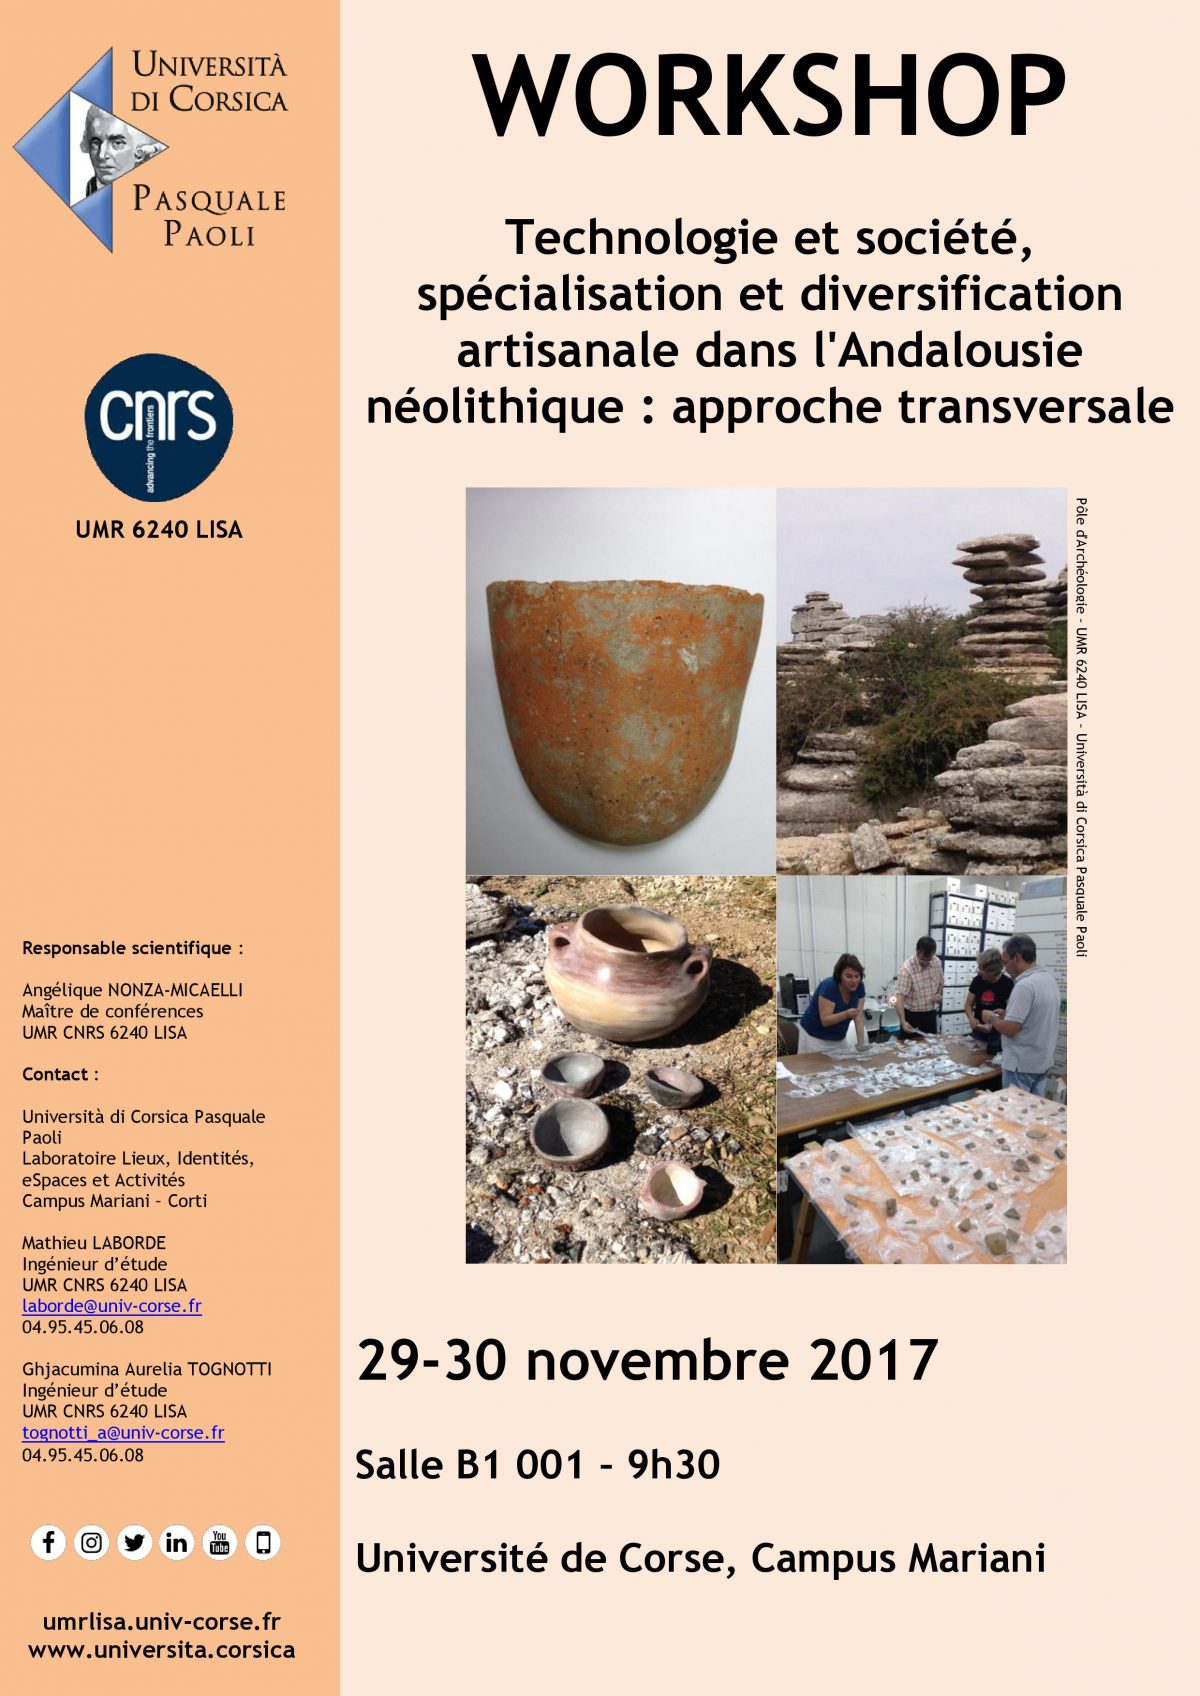 Workshop  » Technologie et société, spécialisation et diversification artisanale dans l’Andalousie néolitique : approche transversale »